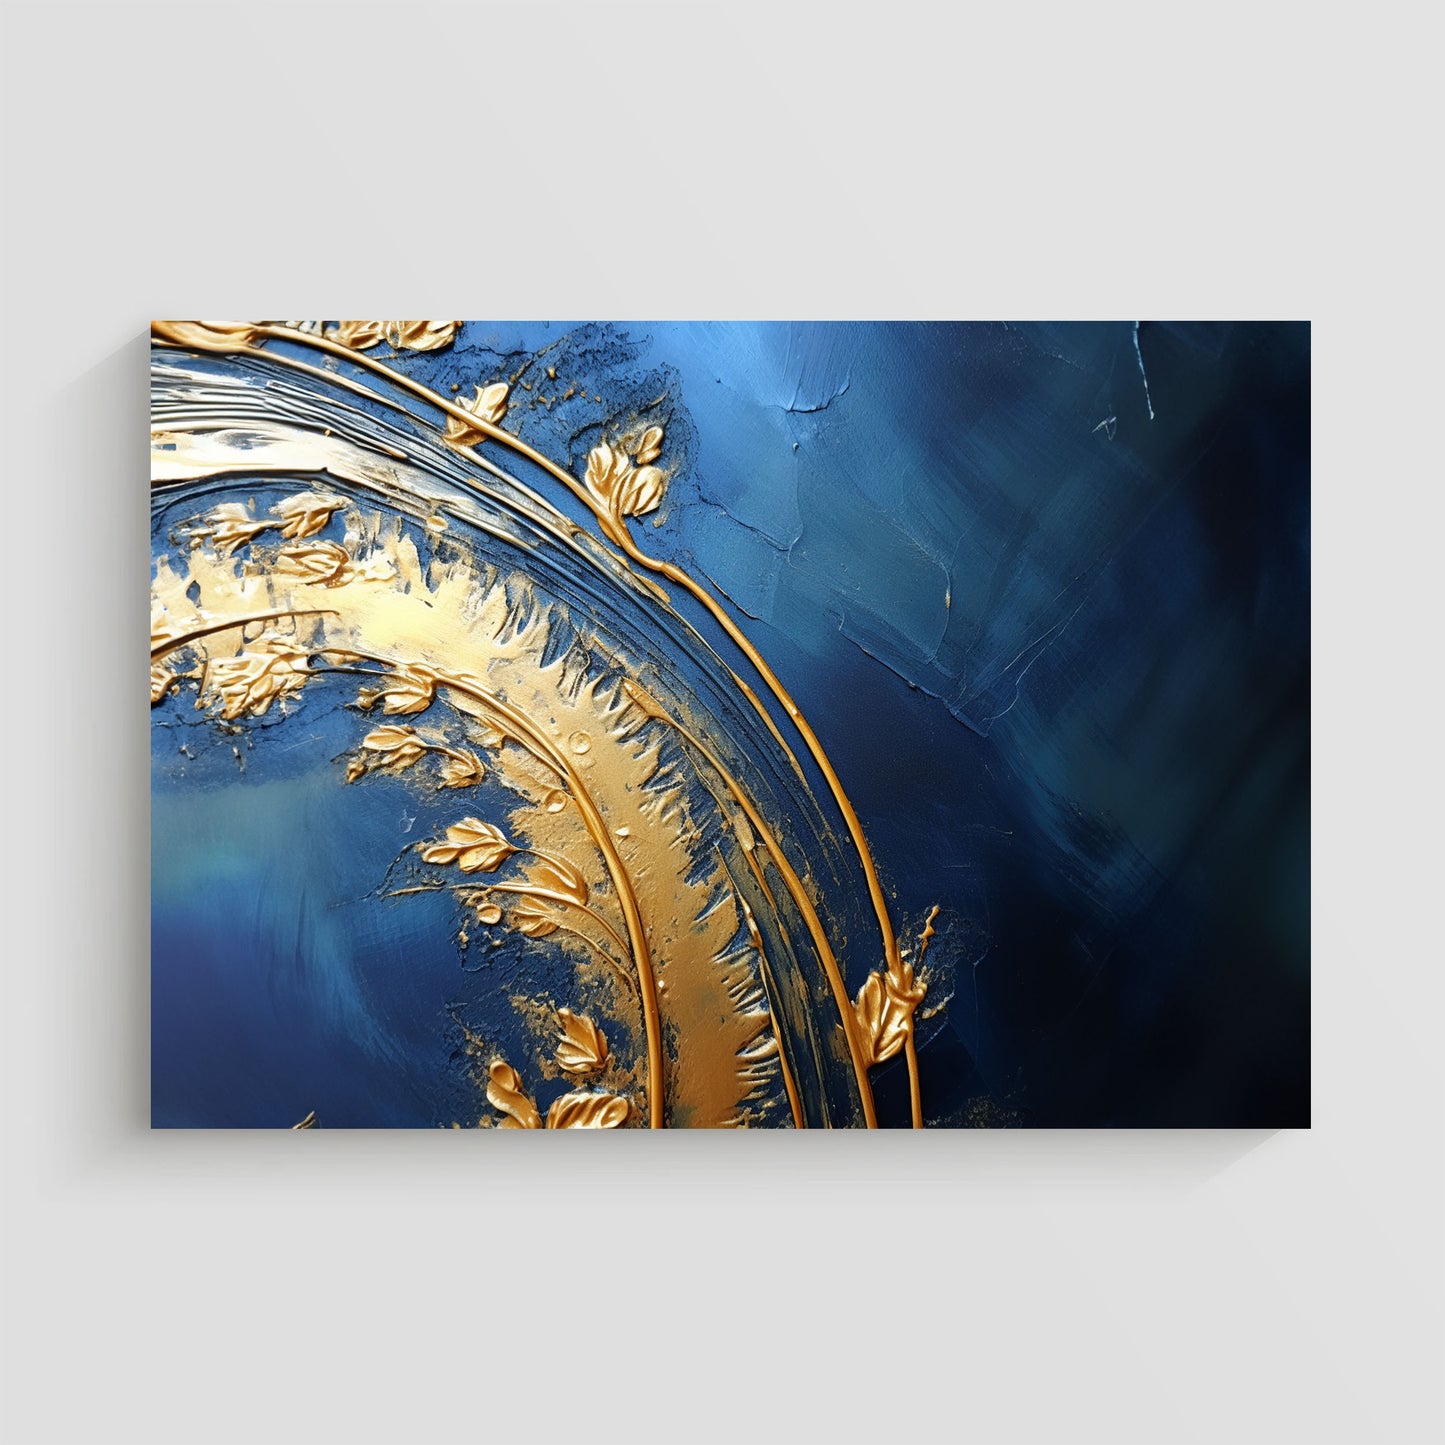 Arte abstracto con textura en colores azul profundo y dorado, creando una composición lujosa y contemporánea.